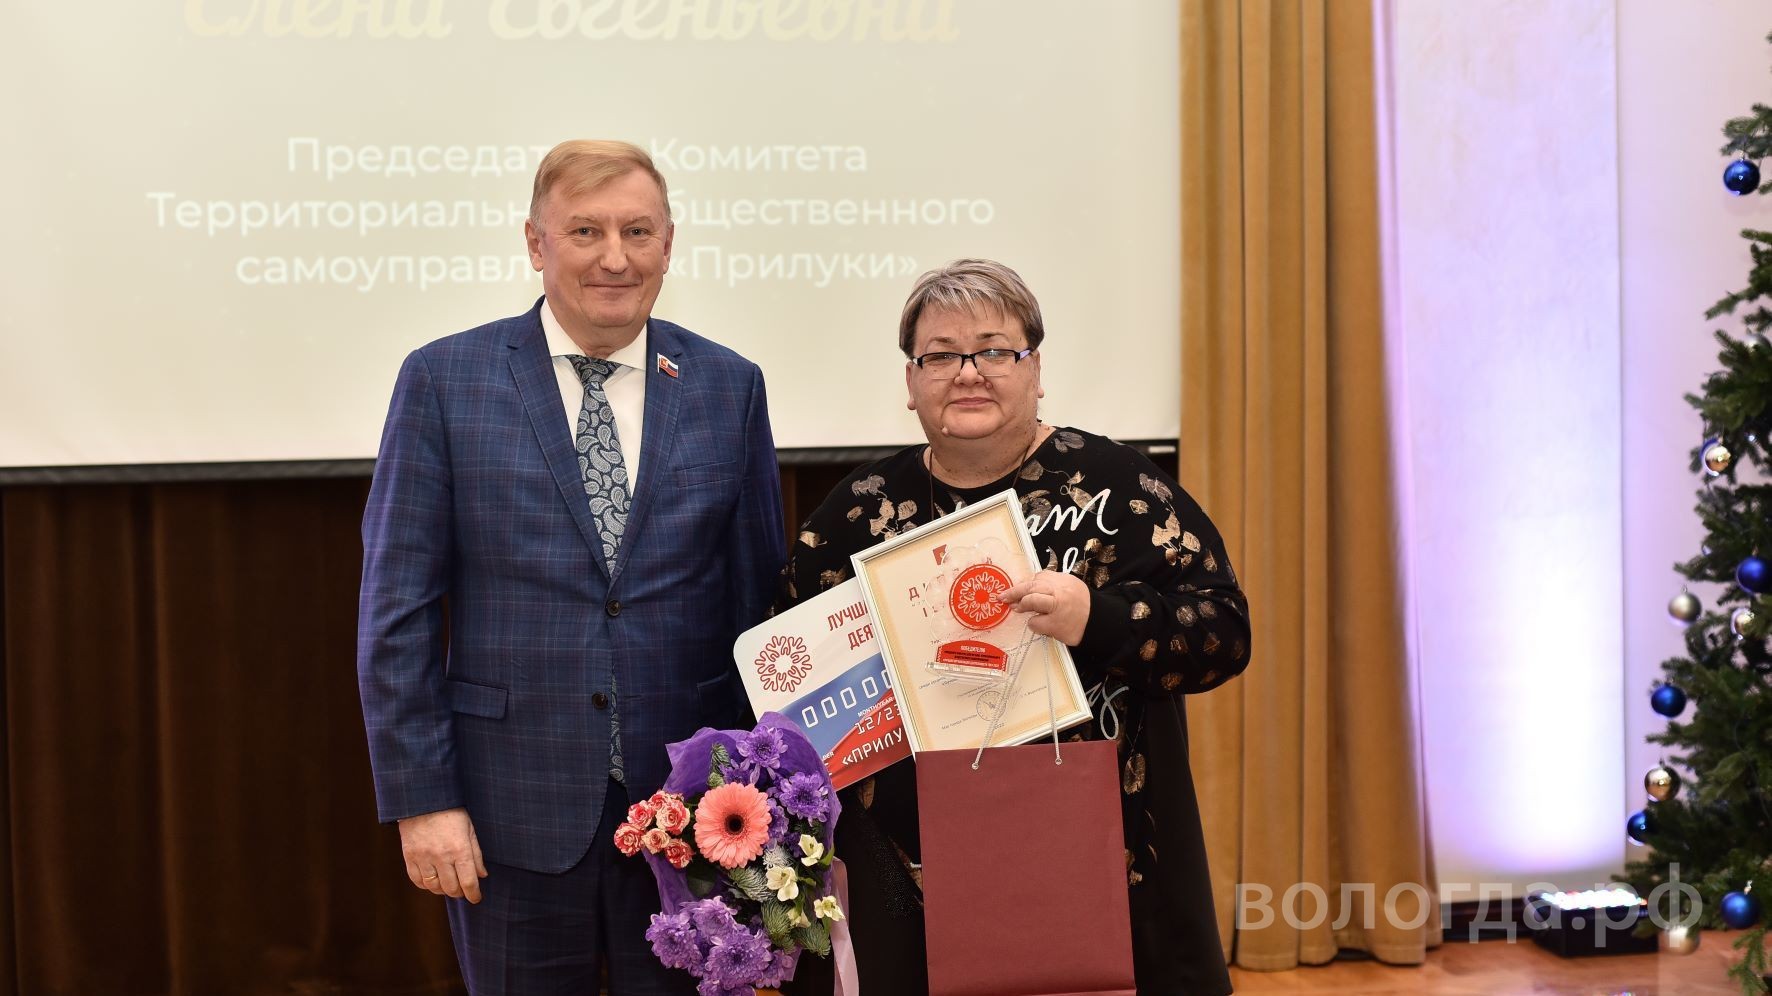 ТОС «Прилуки» победил в конкурсе территориальных общественных самоуправлений Вологды